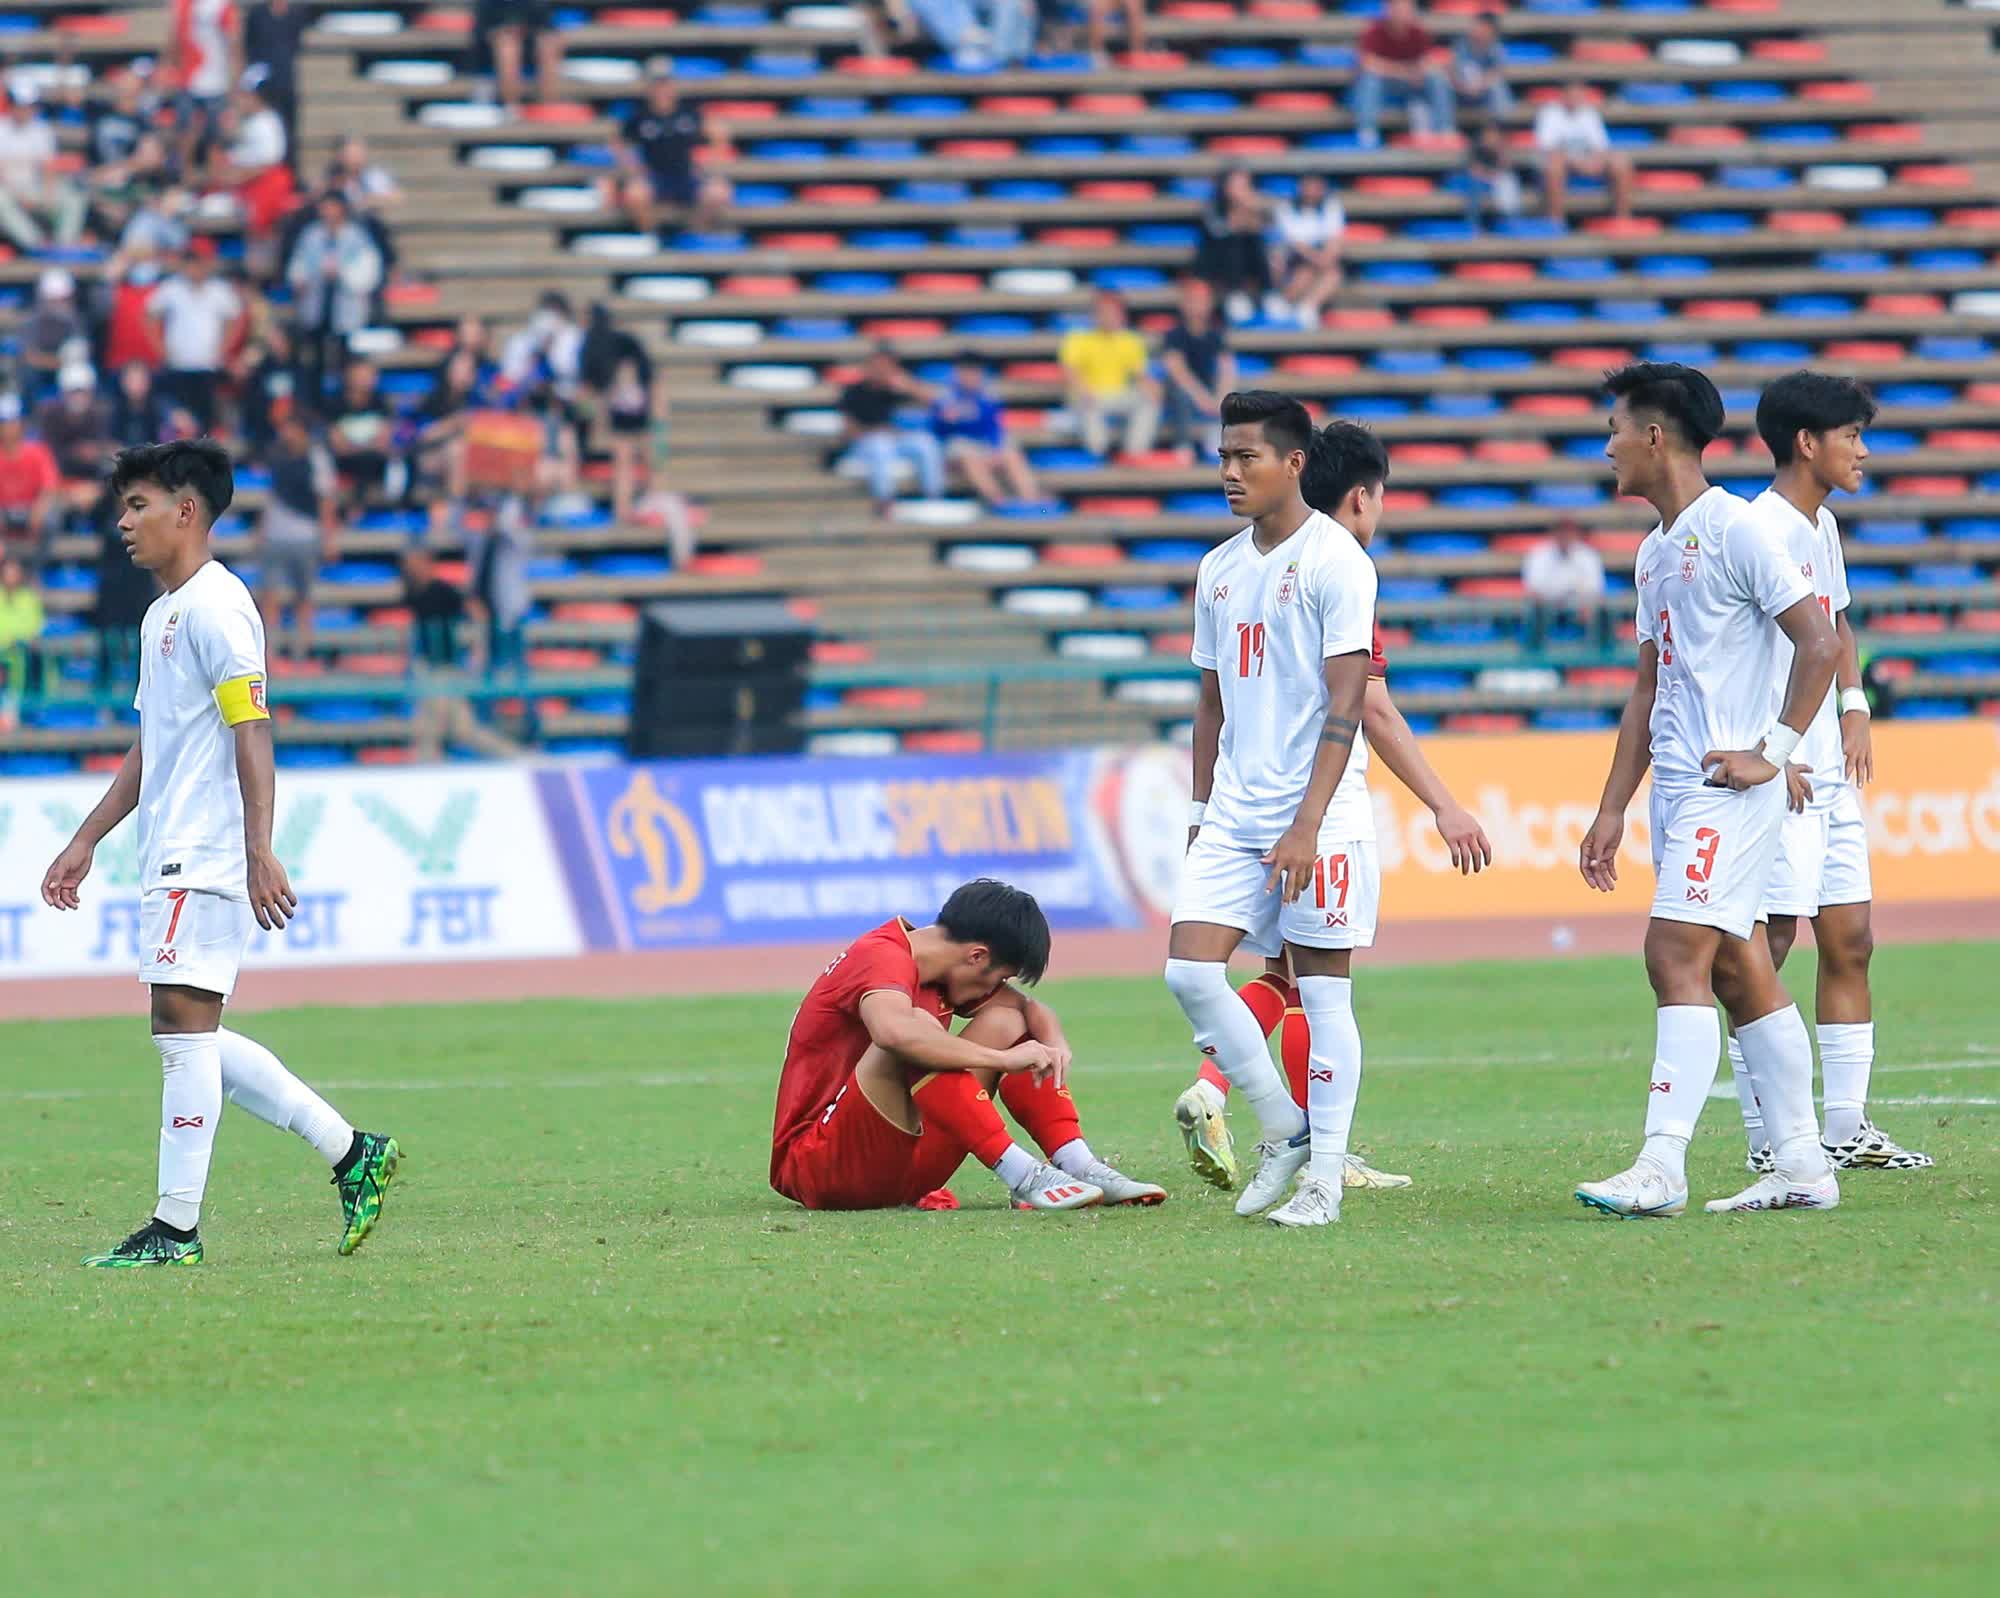 Cảm xúc trái ngược sau trận đấu: U22 Việt Nam hân hoan, cầu thủ U22 Myanmar đổ gục sau khi tuột HCĐ - Ảnh 3.